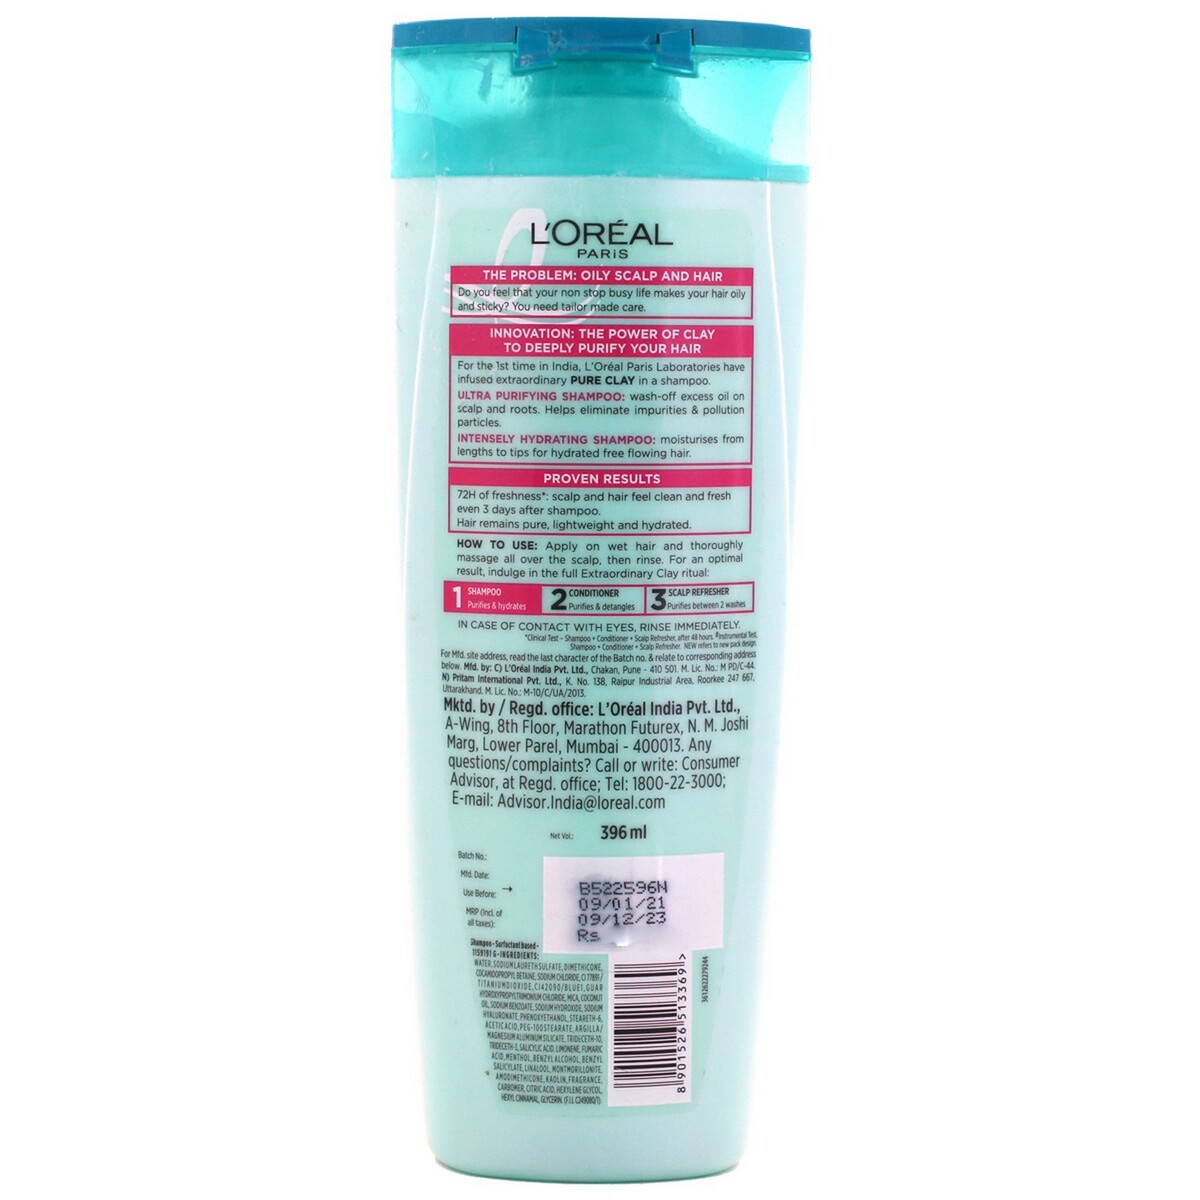 L'Oreal Paris Shampoo Extra Ordinary Pure Clay 360ml